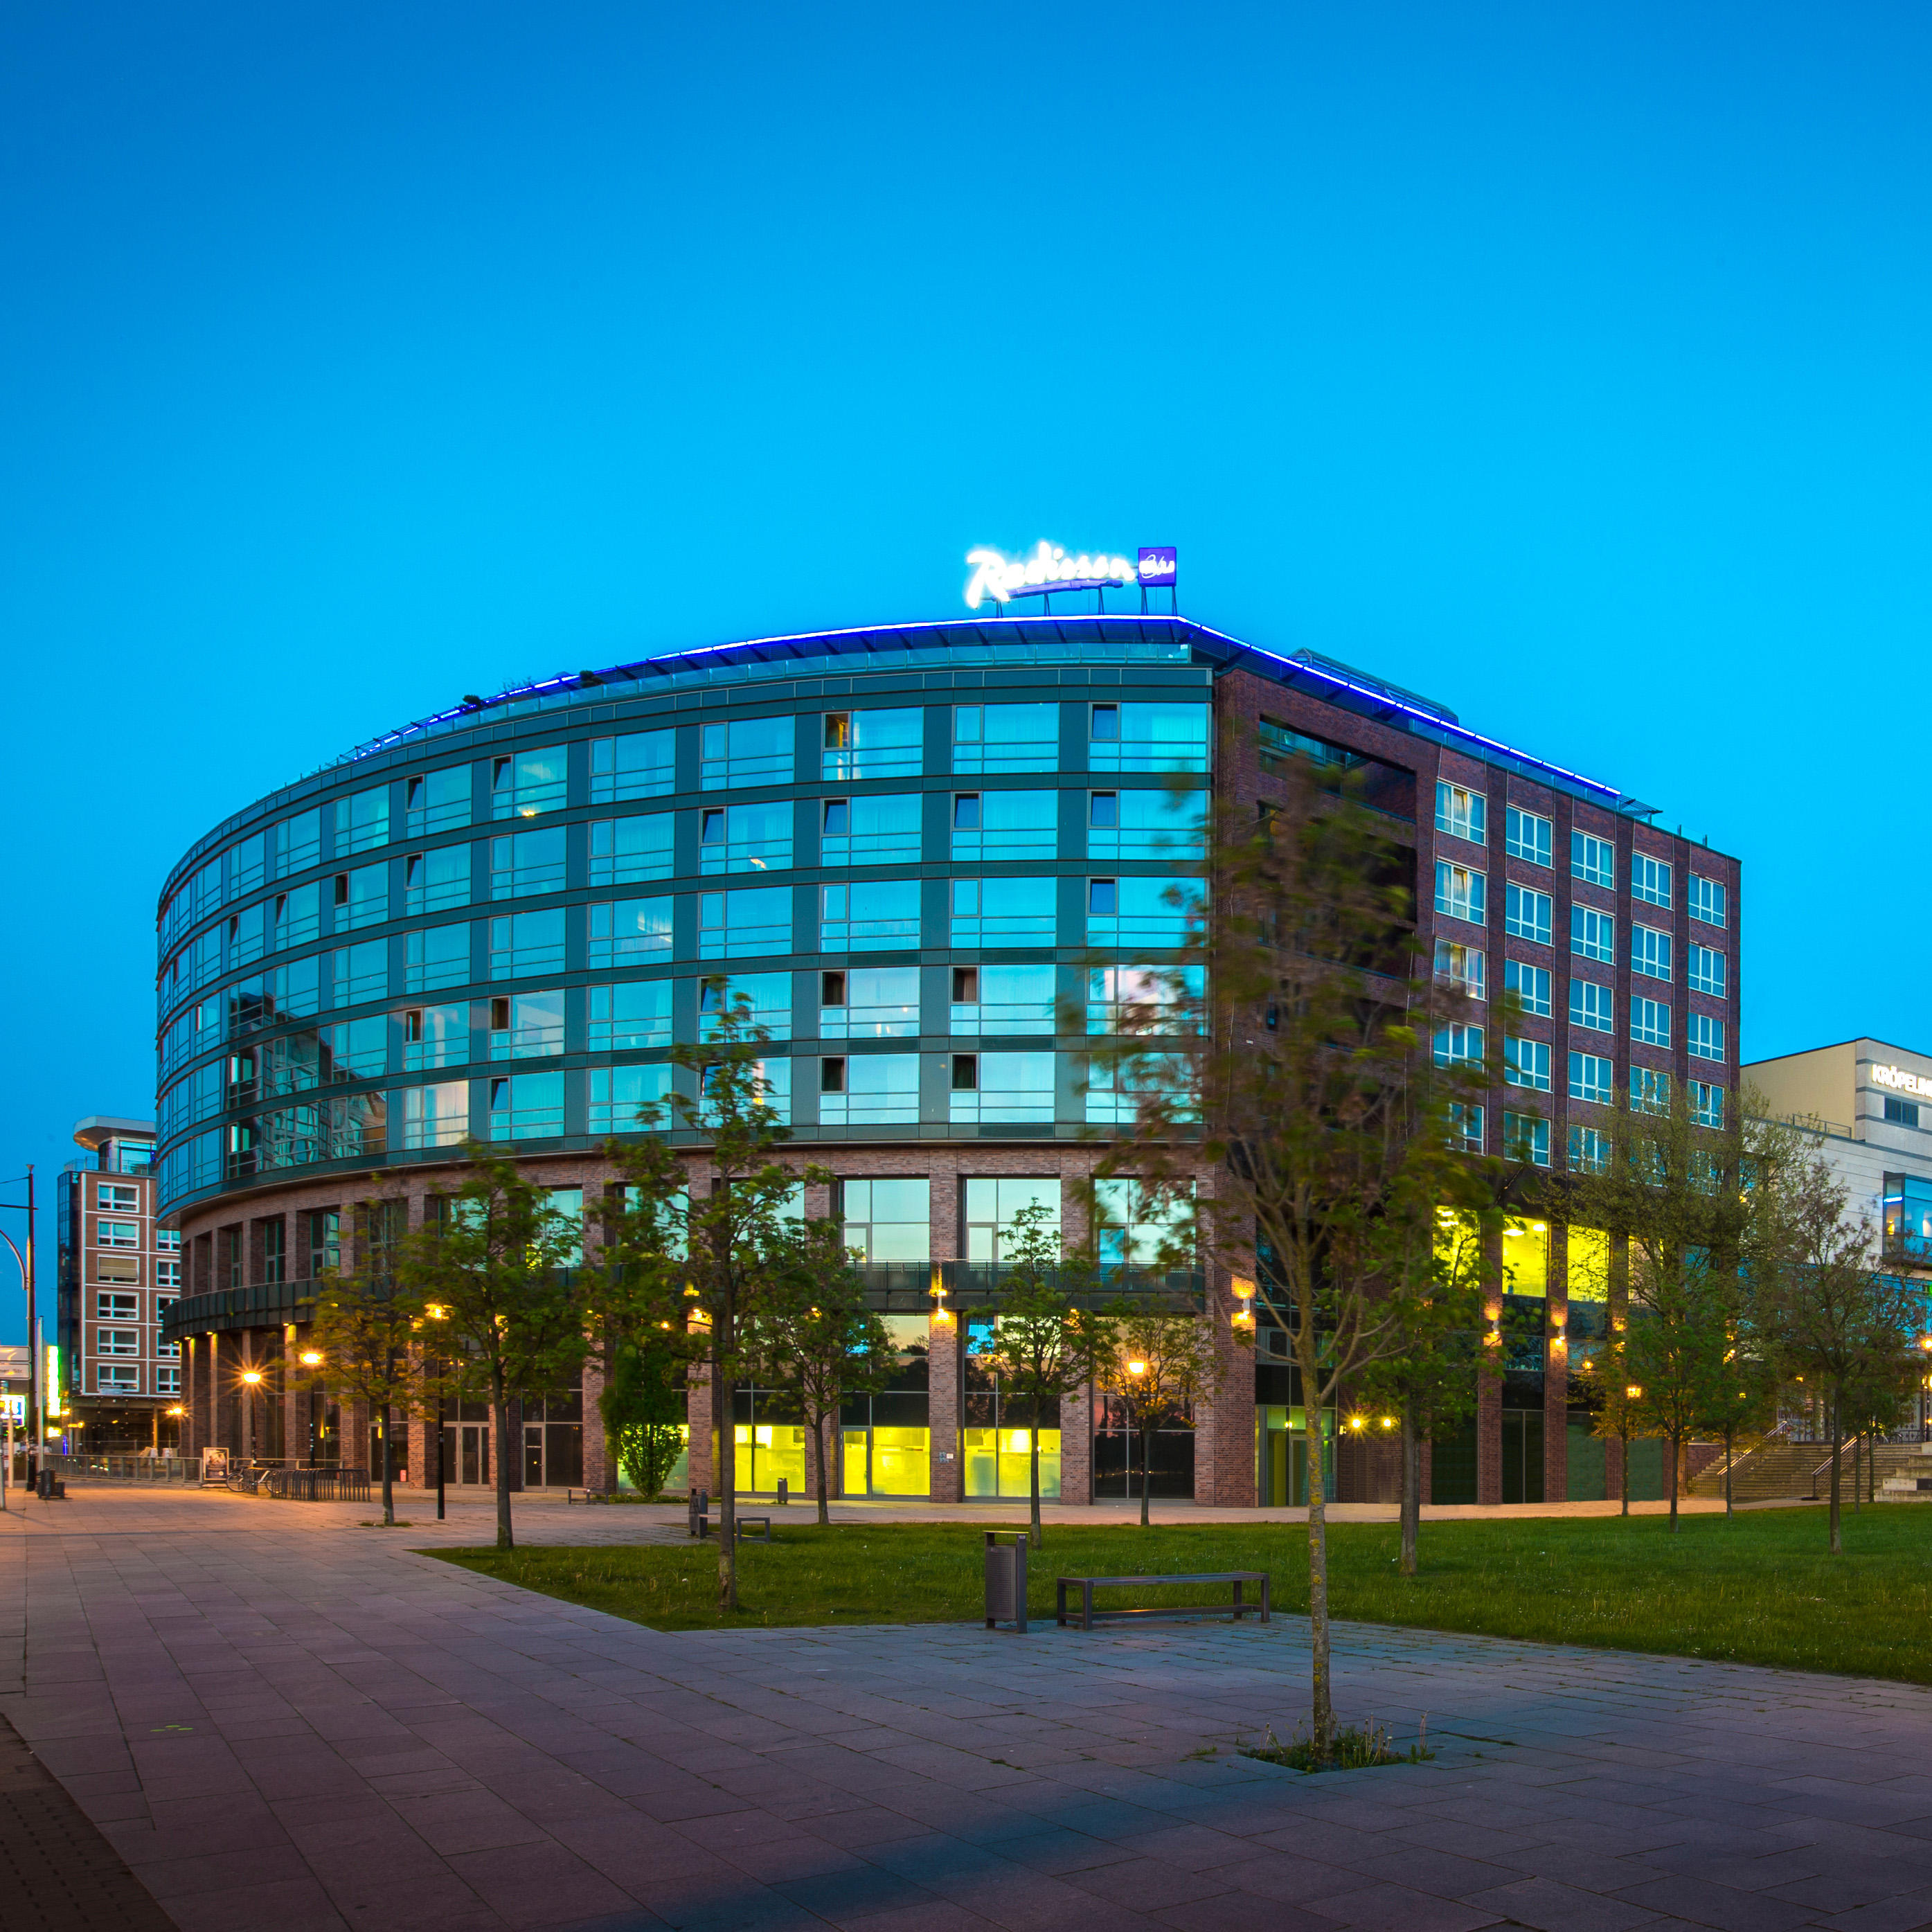 Bild 1 Radisson Blu Hotel, Rostock in Rostock